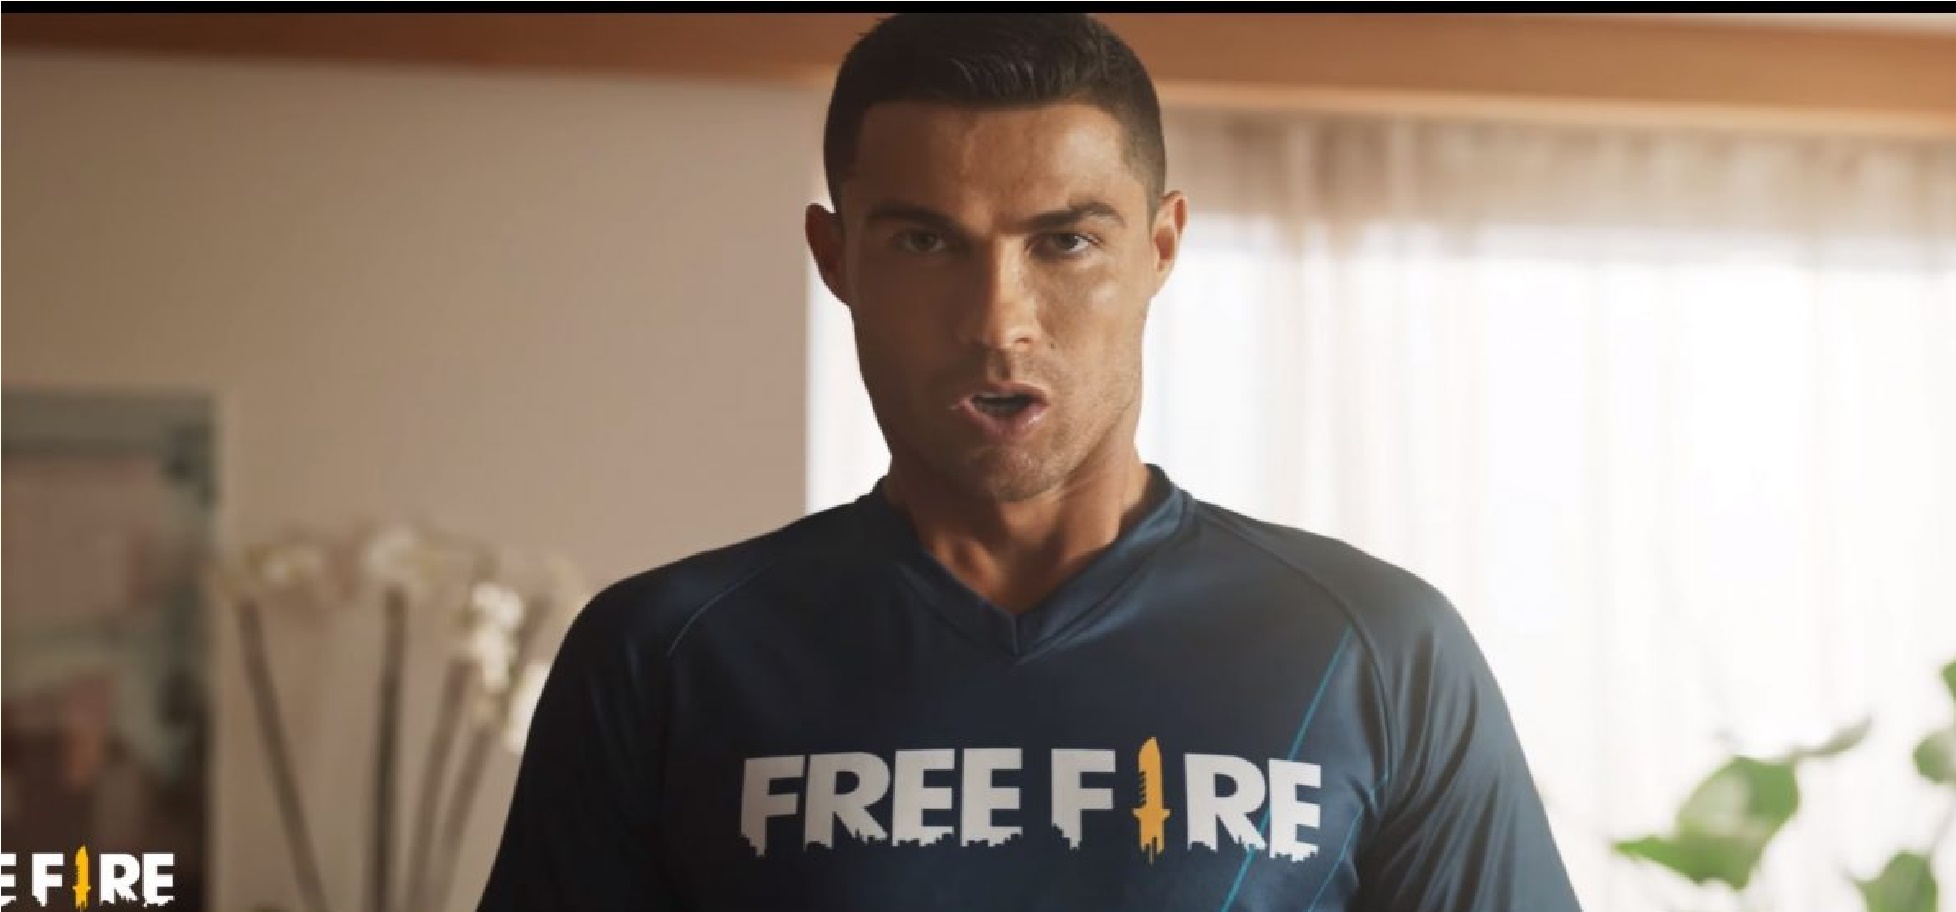 Cristiano Ronaldo (CR7) x Free Fire (FF) Release Date ...